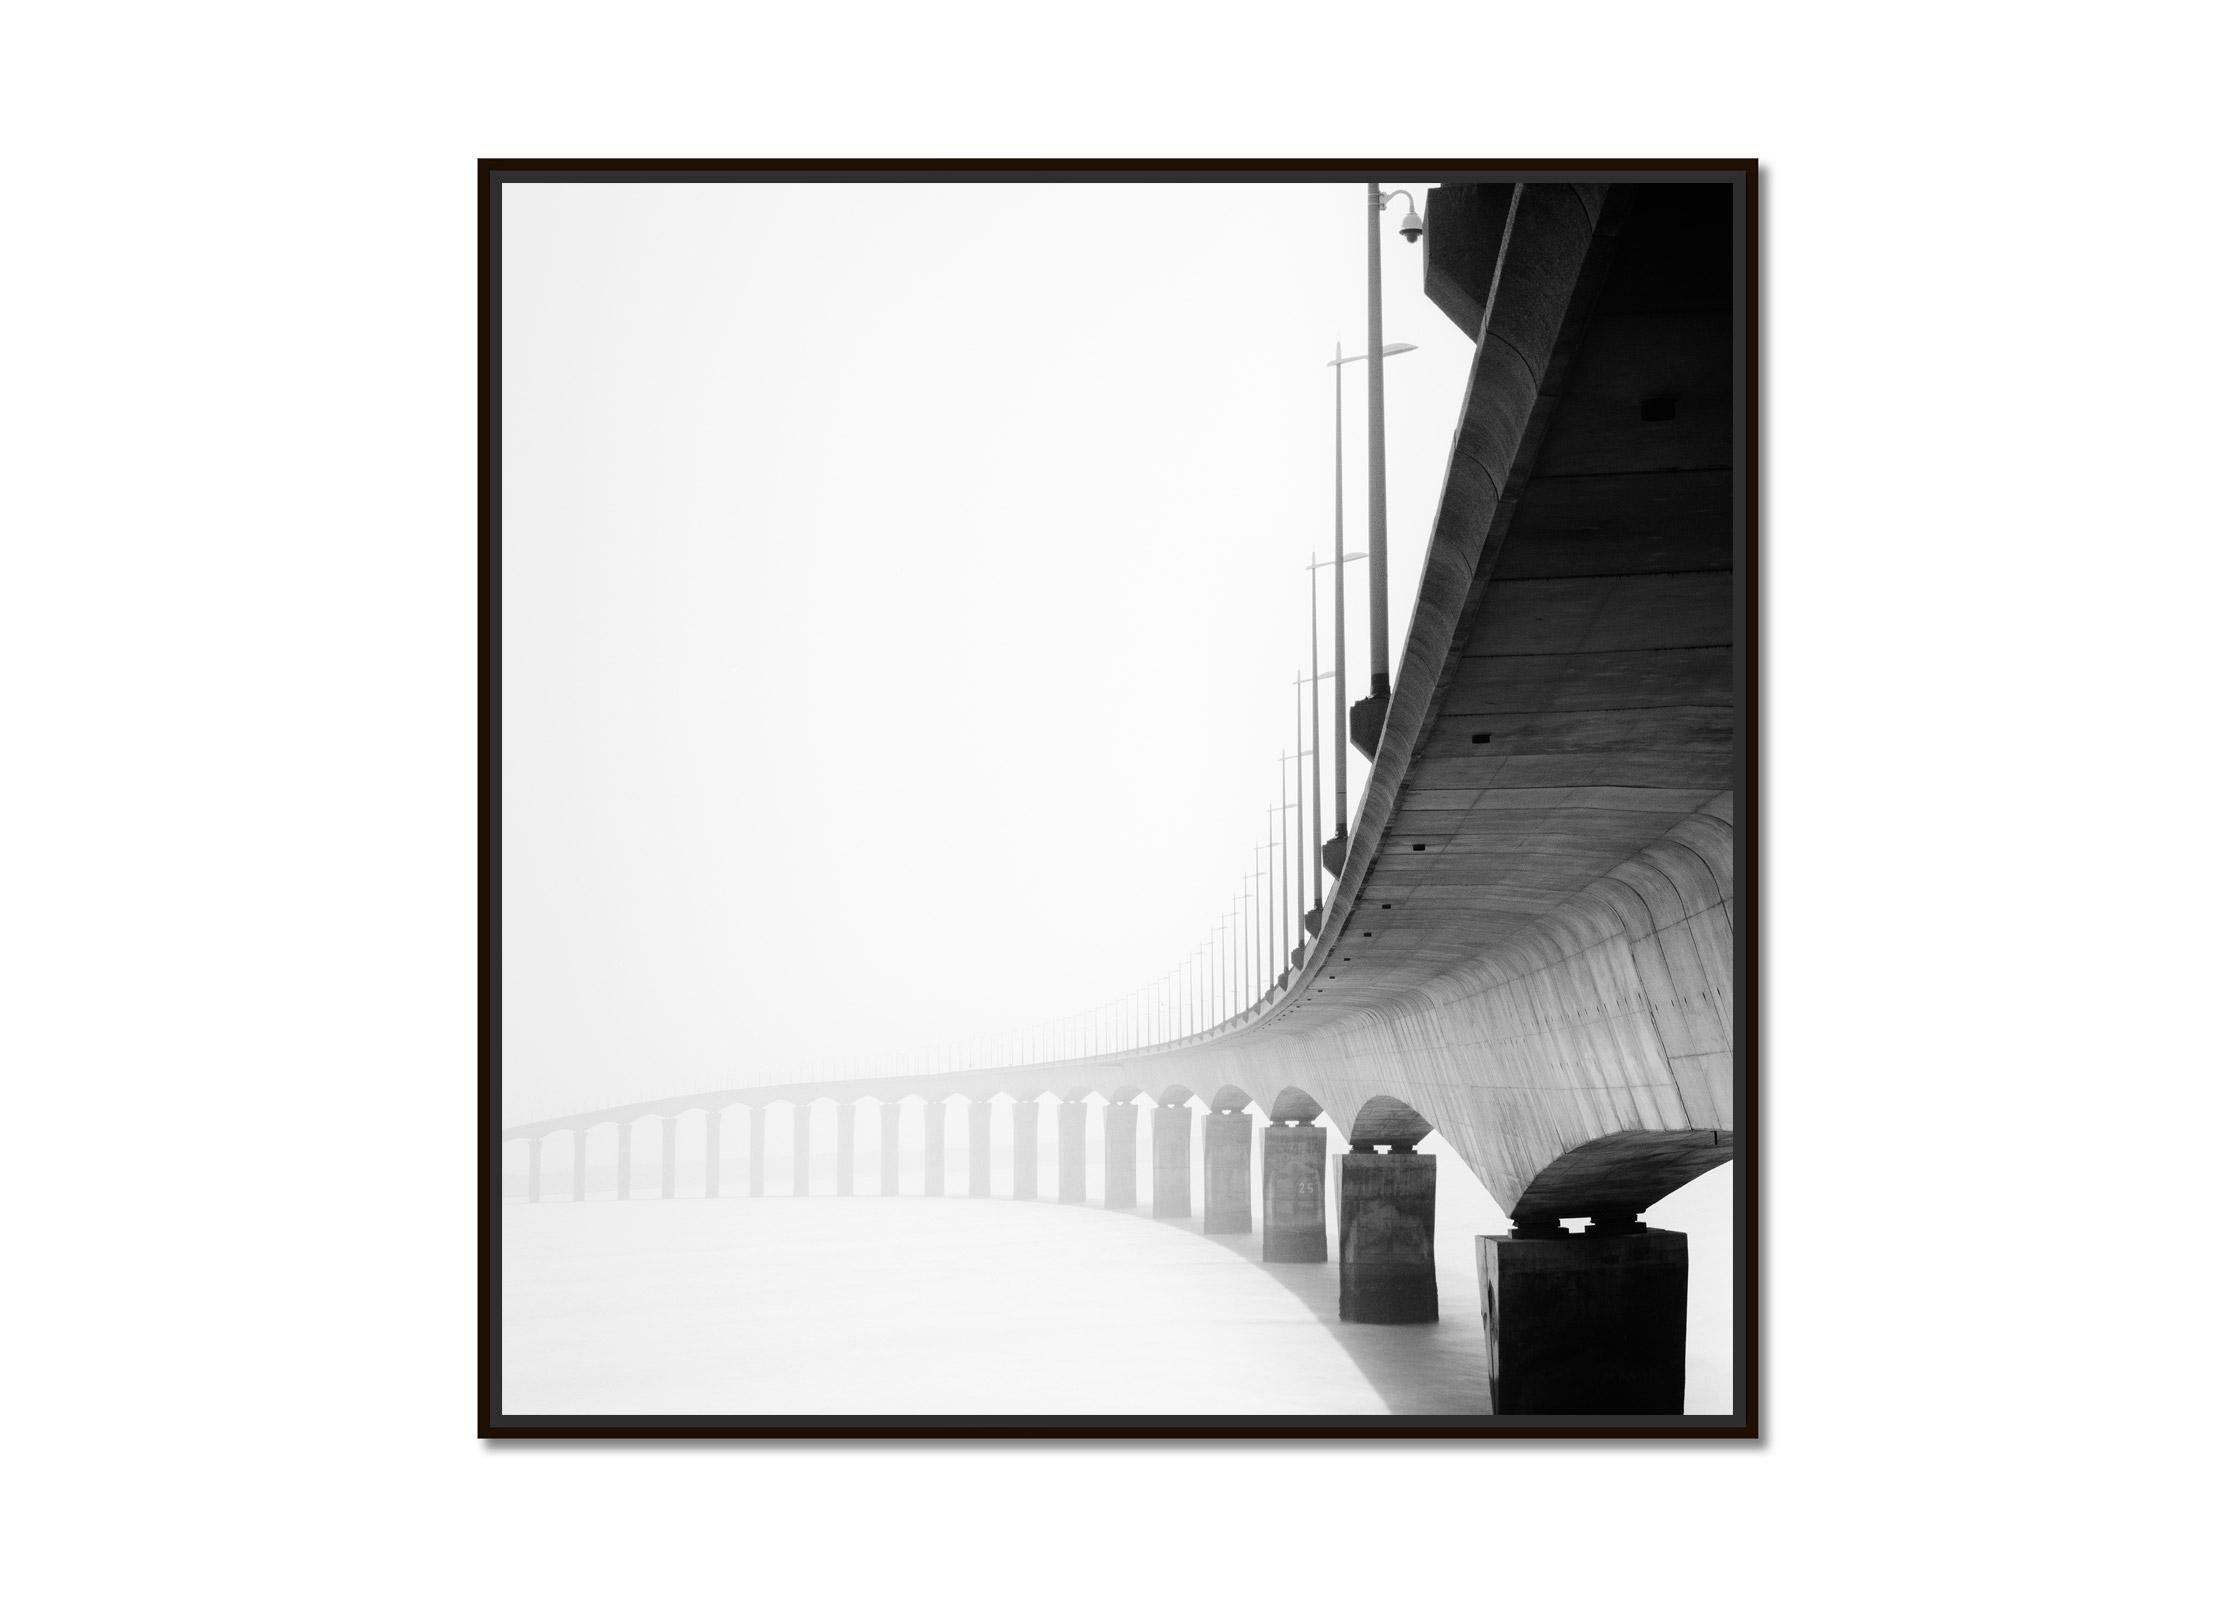 Le de Re Bridge, Architekturdetails, Frankreich, Schwarzweiß-Landschaftsfotografie – Photograph von Gerald Berghammer